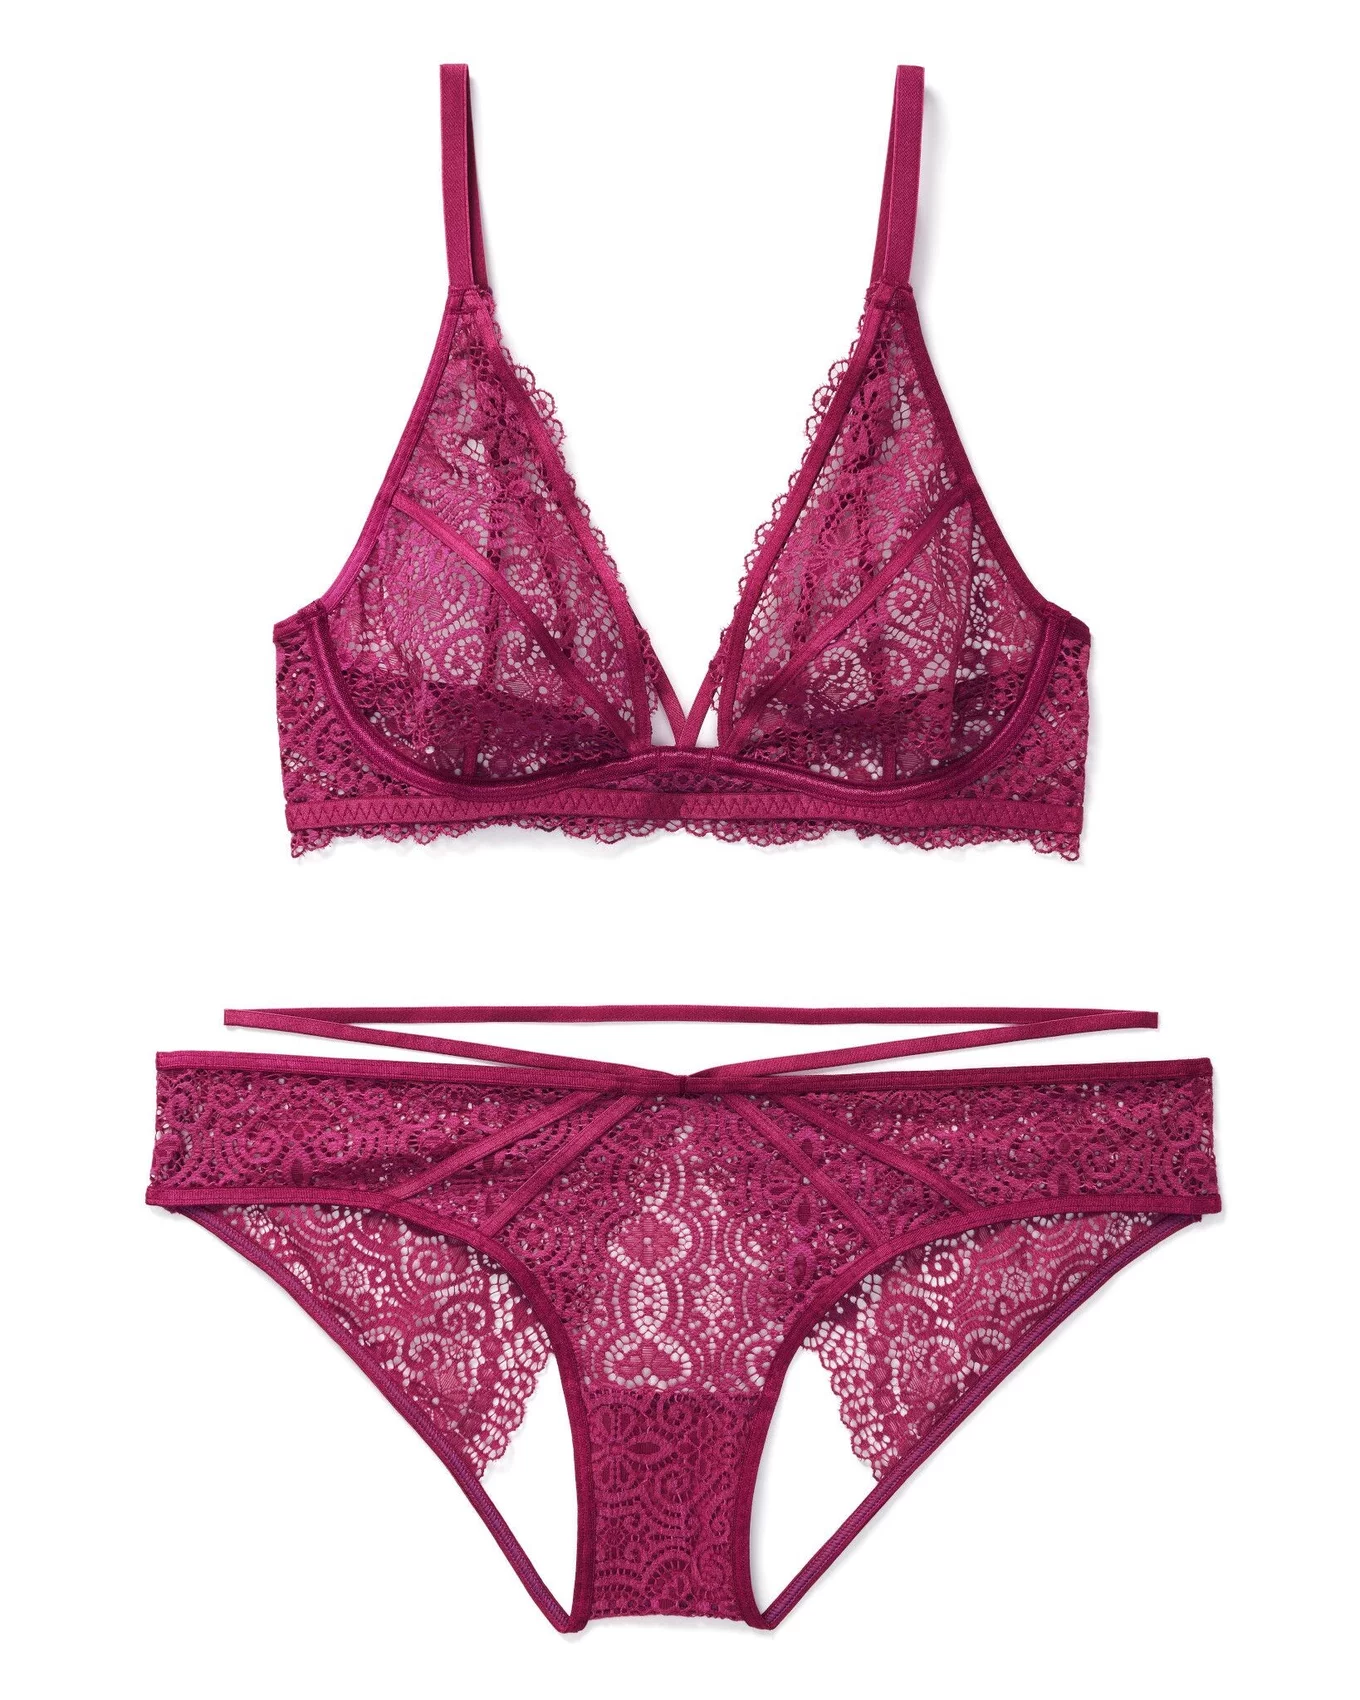 Deesse Lingerie, Intimates & Sleepwear, Addition Elle Deesse Womens Bra  42 Ddd Purple Red Lace Padded